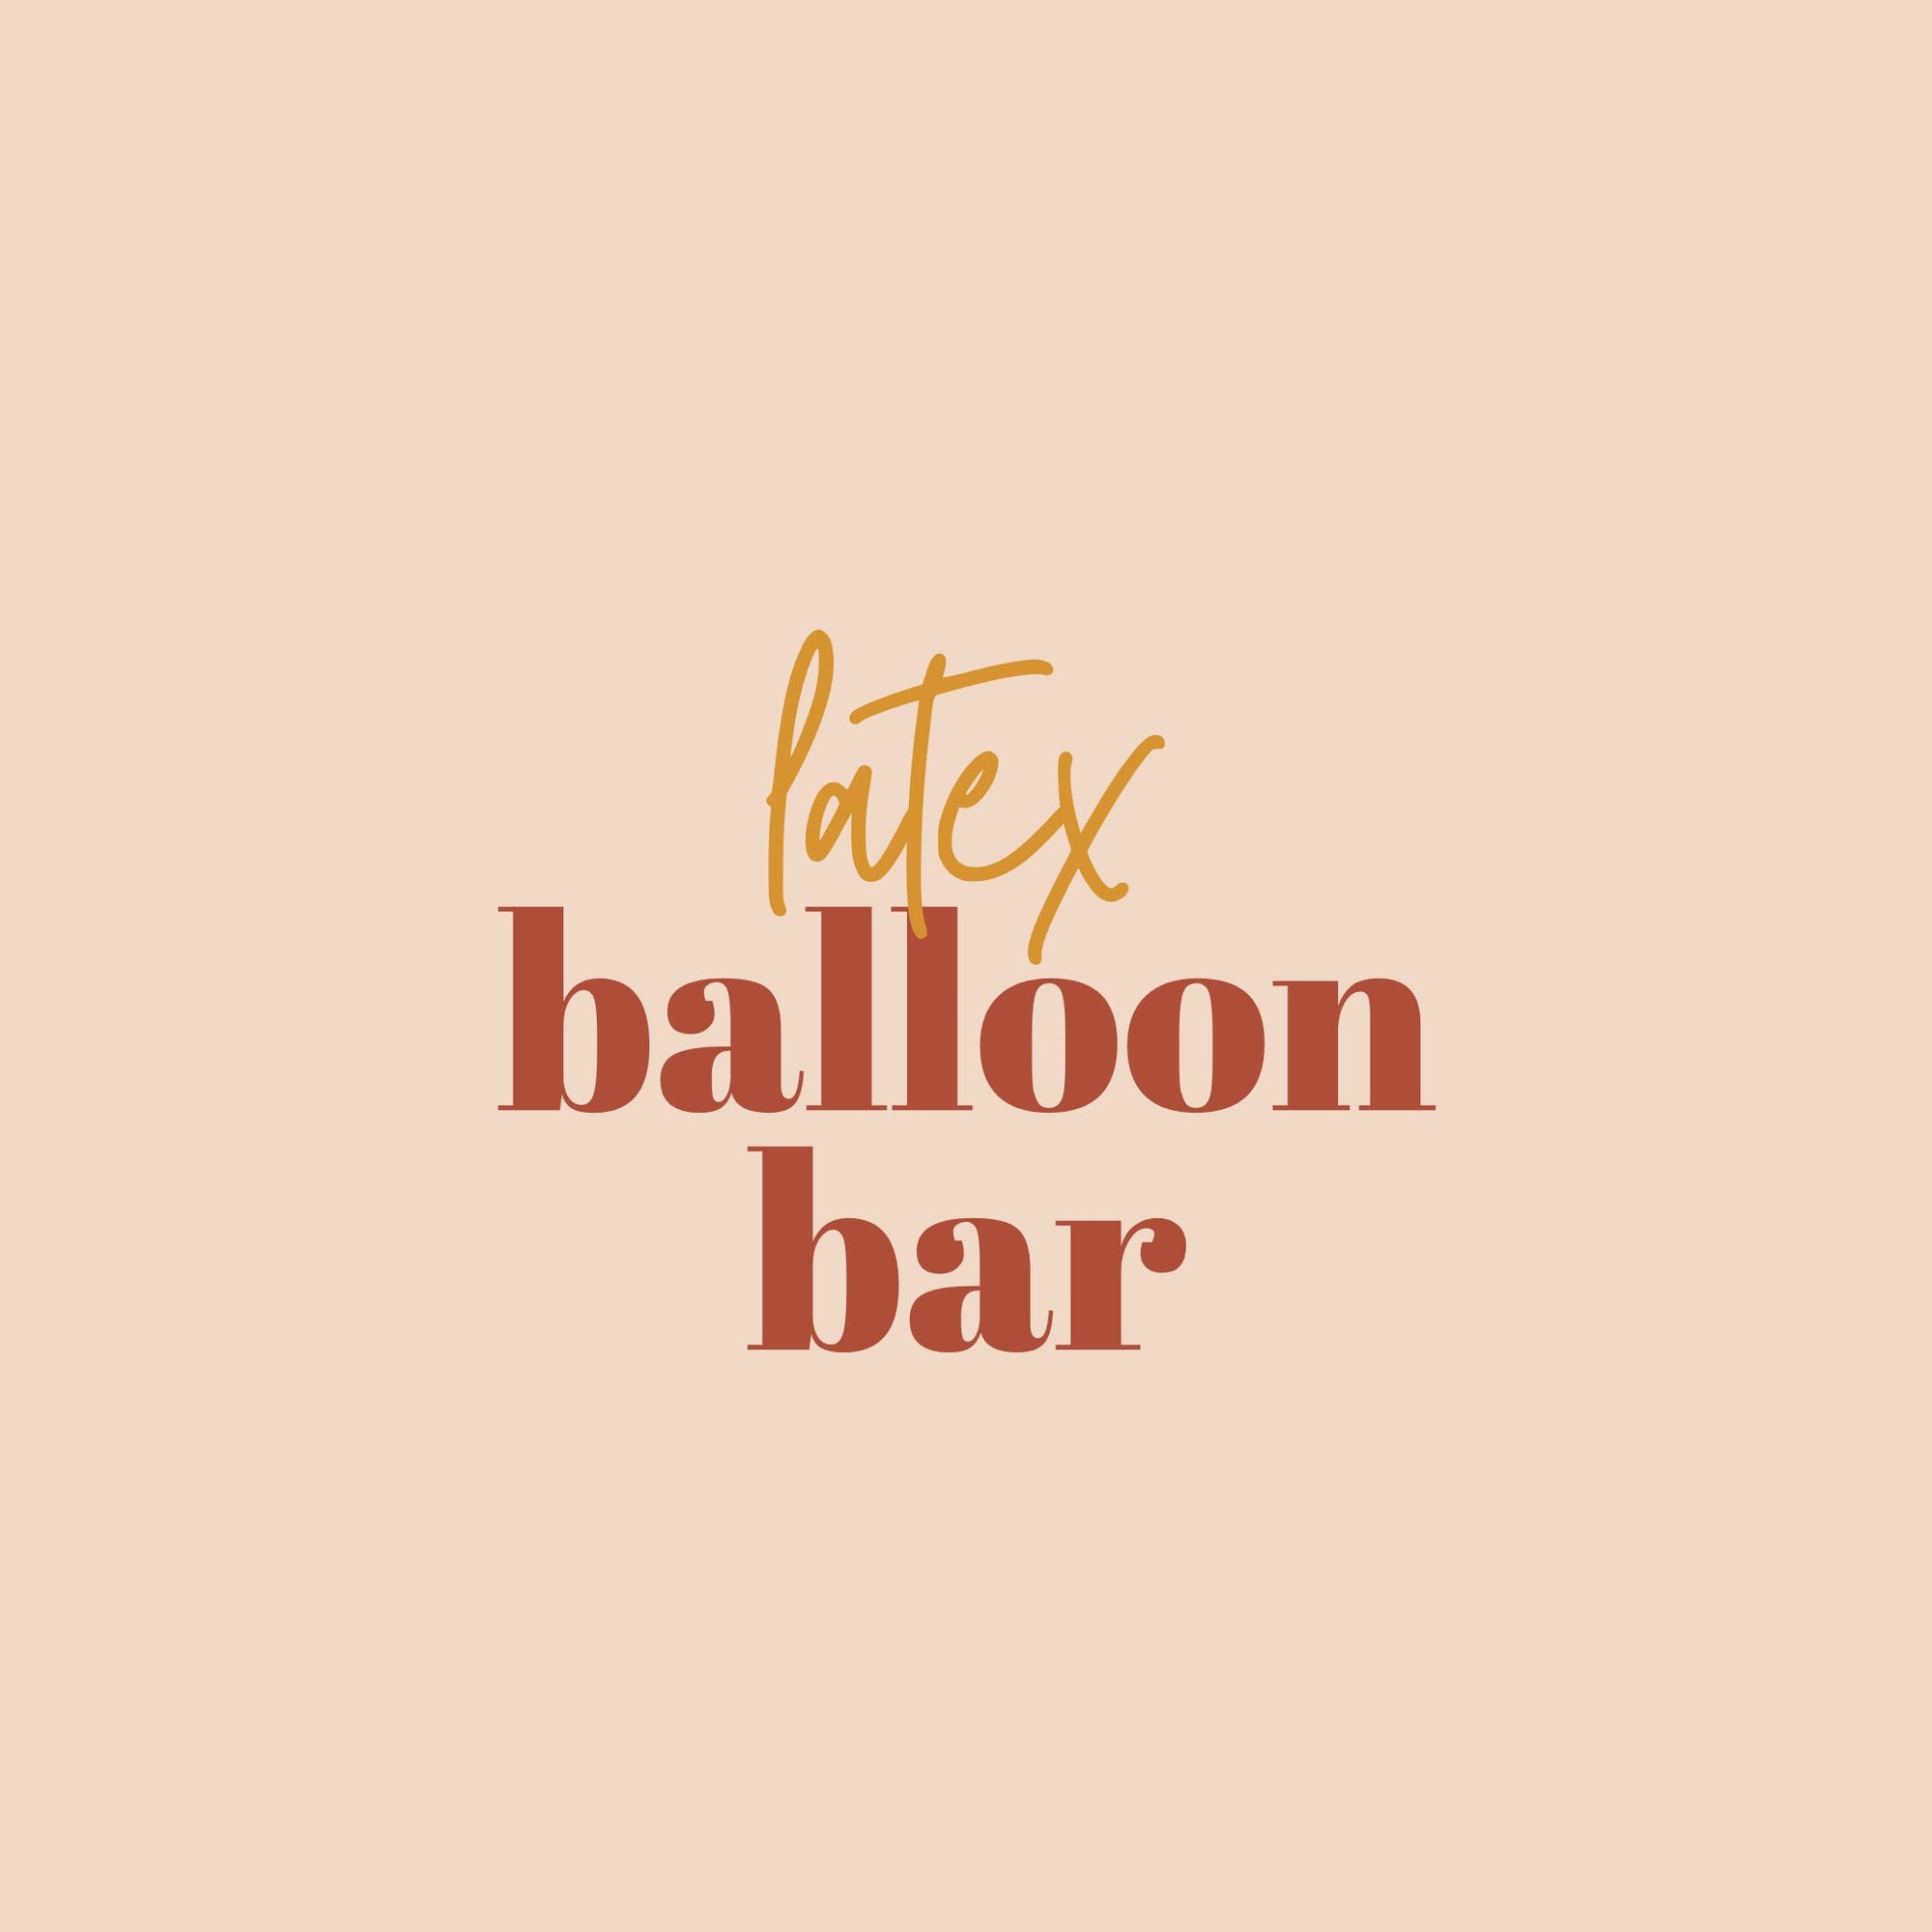 Balloon Bar - Latex